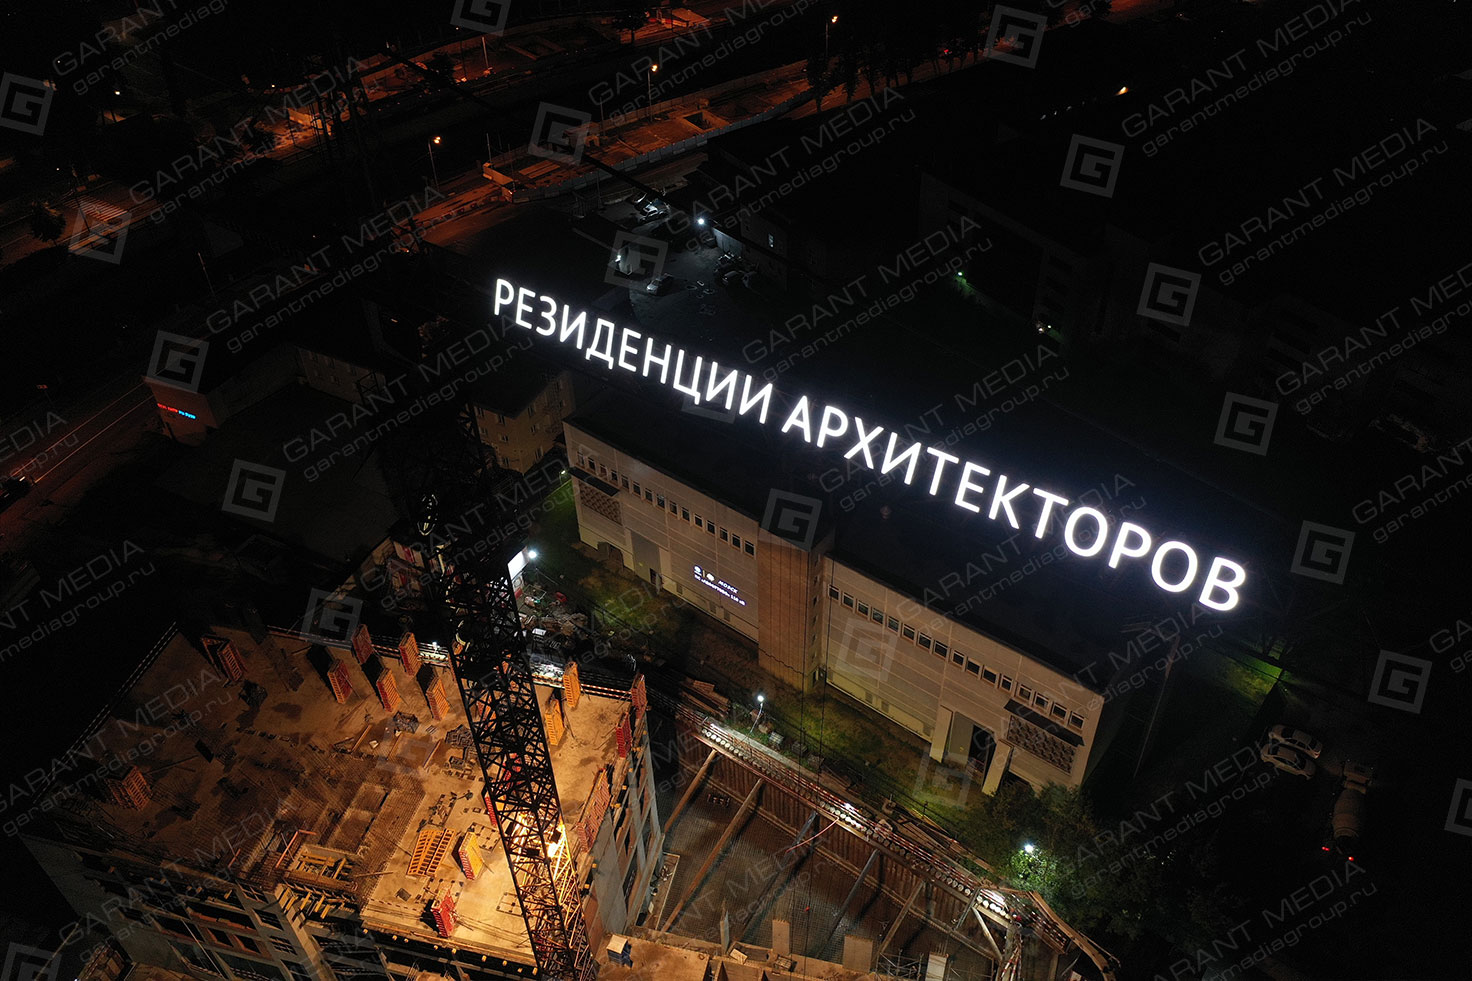 Реклама на башенном кране "Резиденция архитекторов"